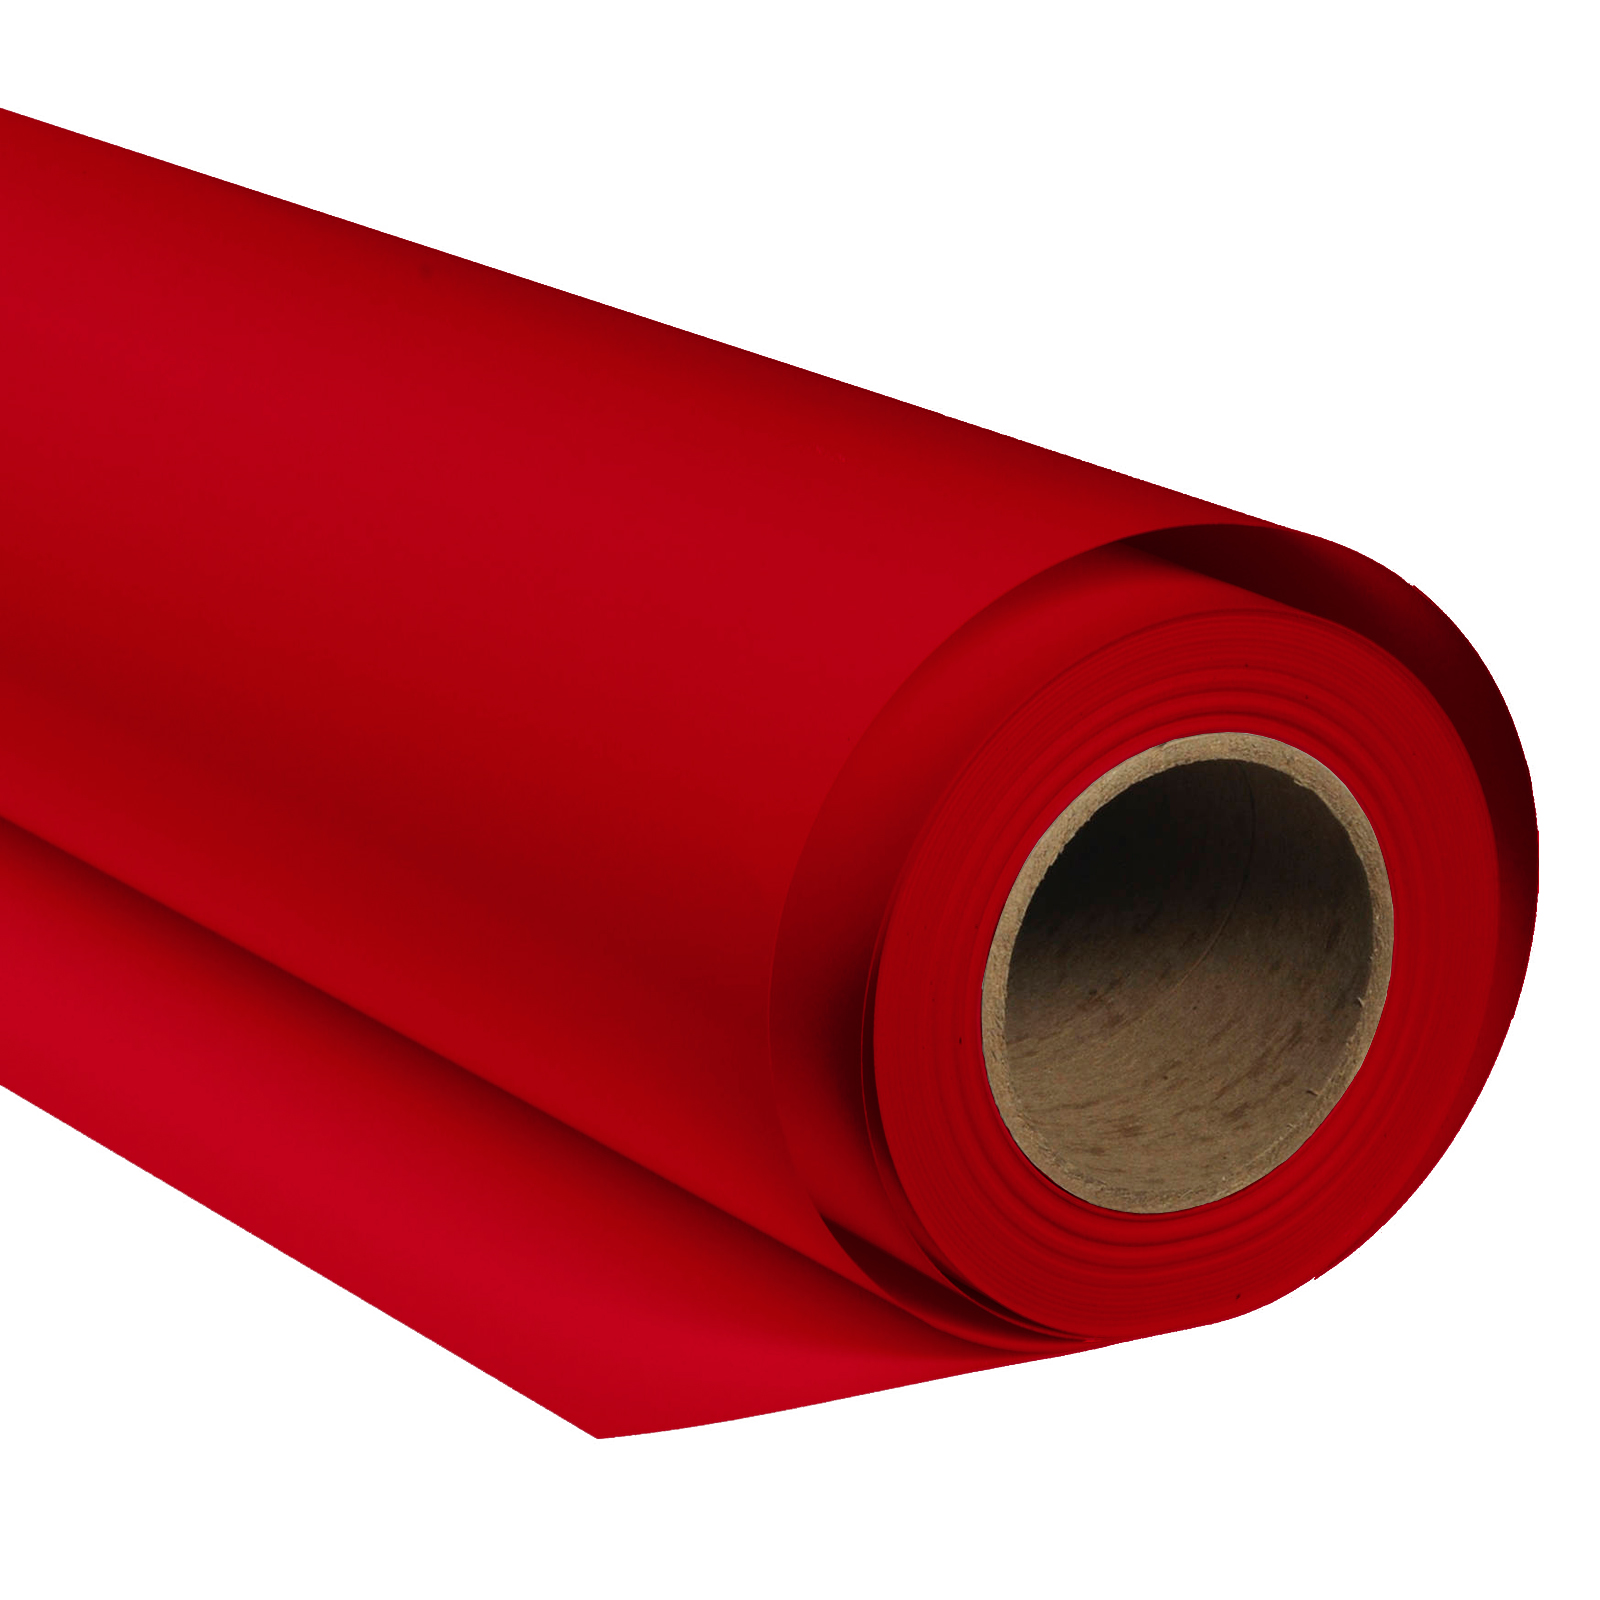 BRESSER SBP13 Papierhintergrundrolle 2,00 x 11m Crimson Rot